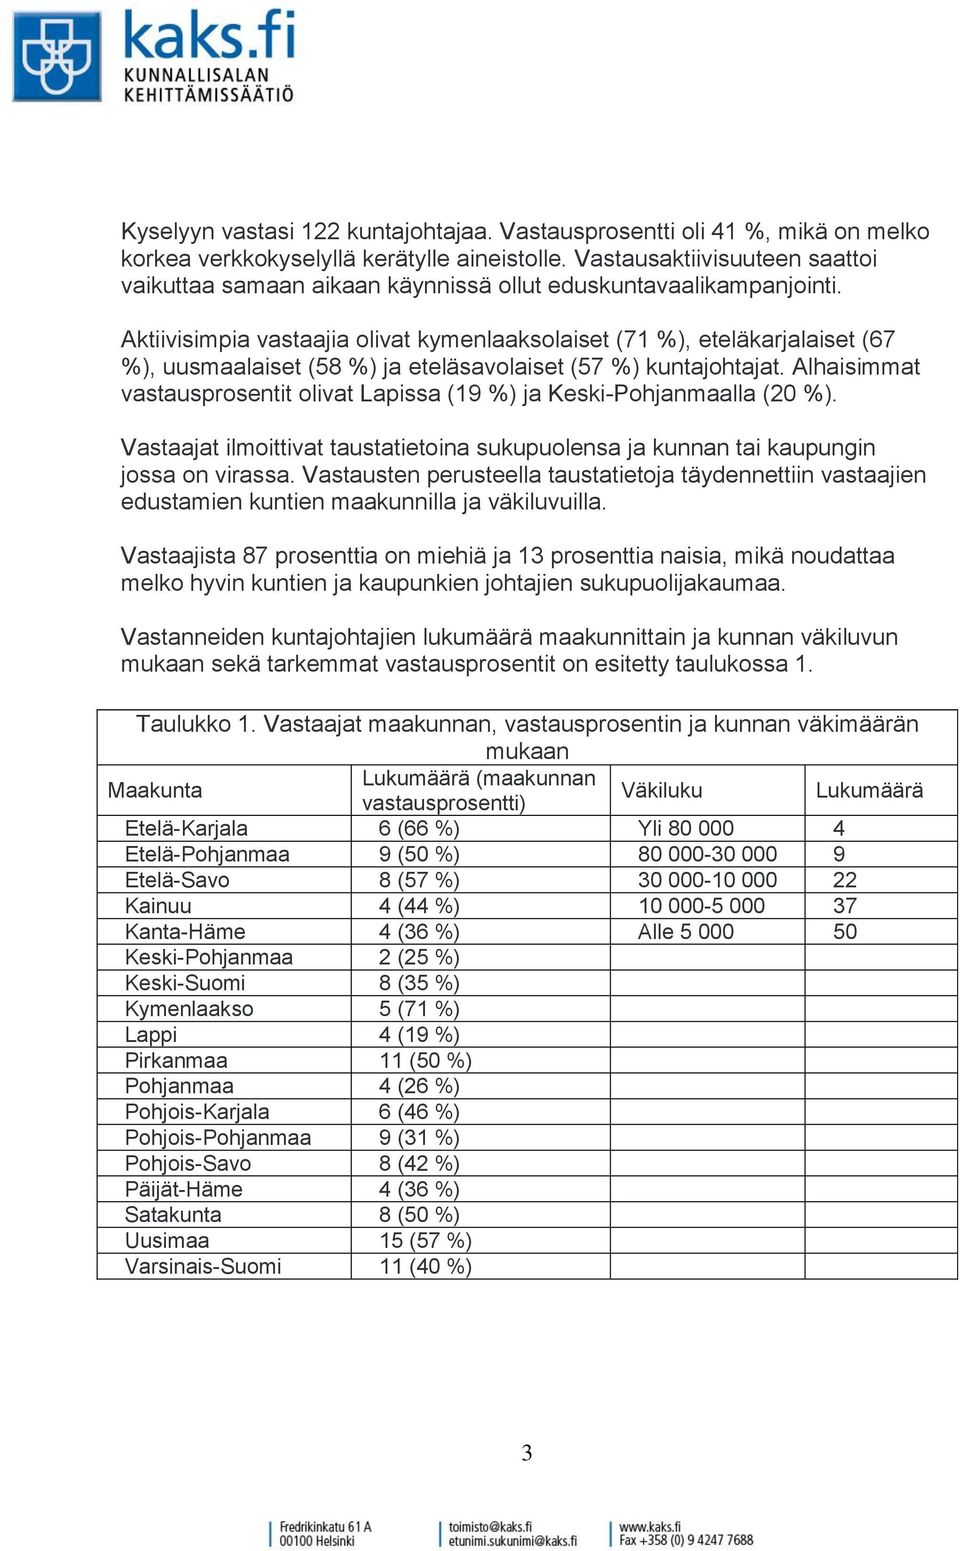 Aktiivisimpia vastaajia olivat kymenlaaksolaiset (71 %), eteläkarjalaiset (67 %), uusmaalaiset (58 %) ja eteläsavolaiset (57 %) kuntajohtajat.